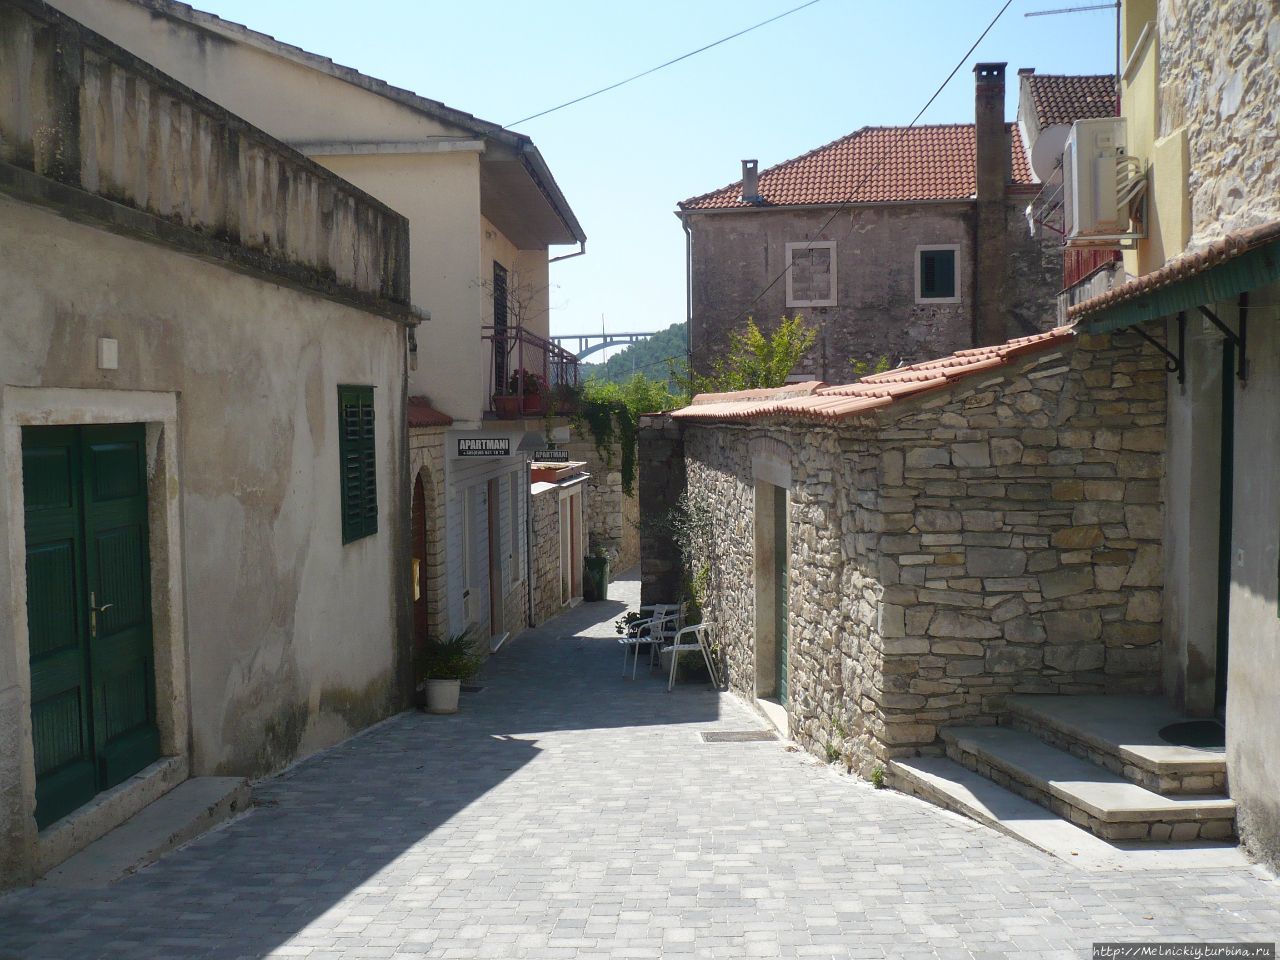 Короткое знакомство с античным городком Скрадин, Хорватия